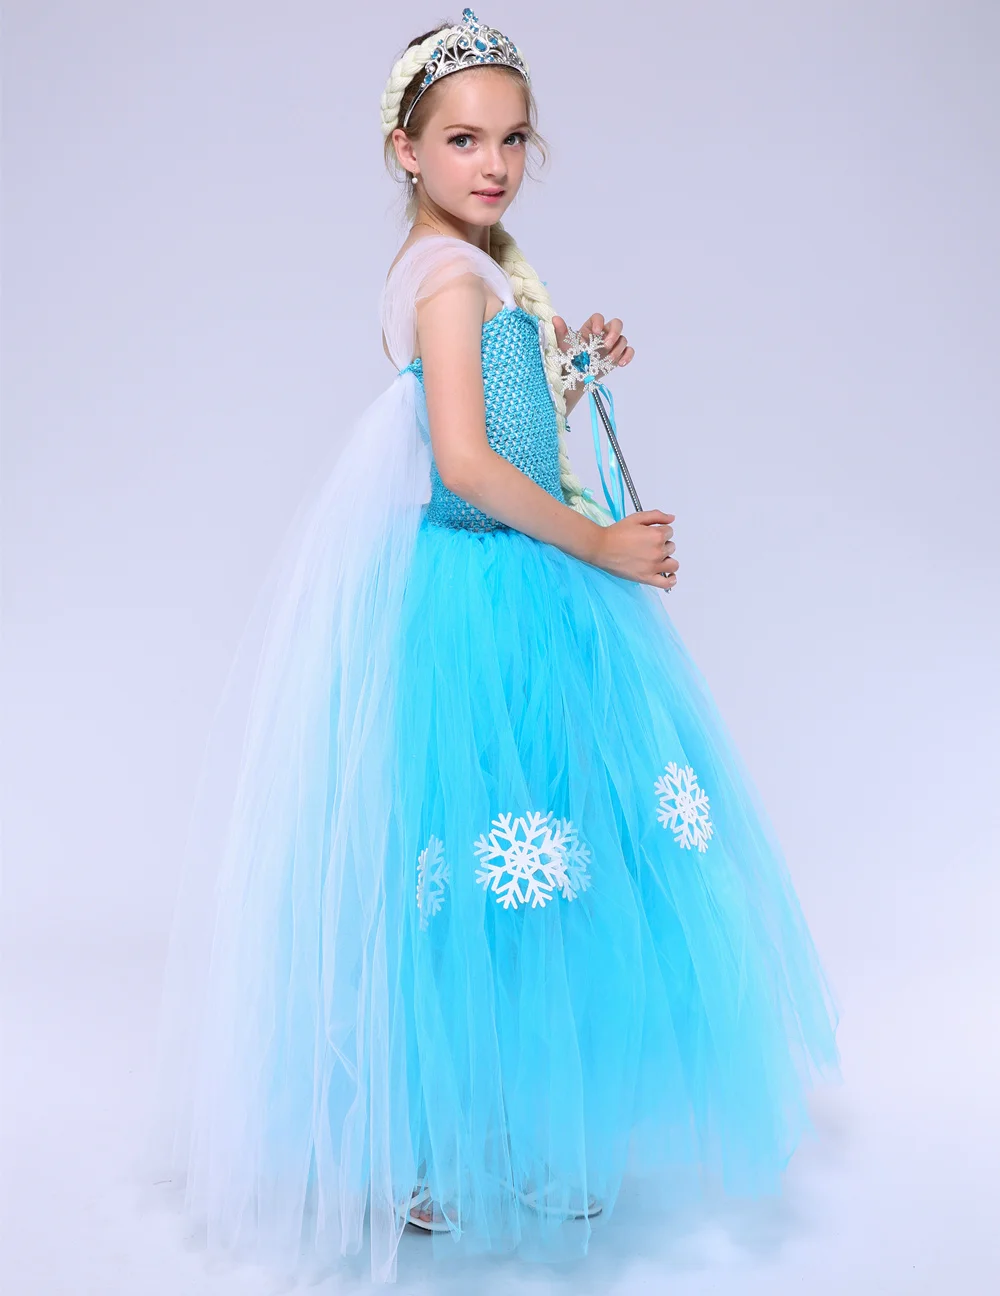 Платье-пачка «Королева Эльза», Тюлевое платье снежной хлопковой расцветки, платье принцессы для девочек, голубое платье для дня рождения, Детский Рождественский костюм на Хэллоуин